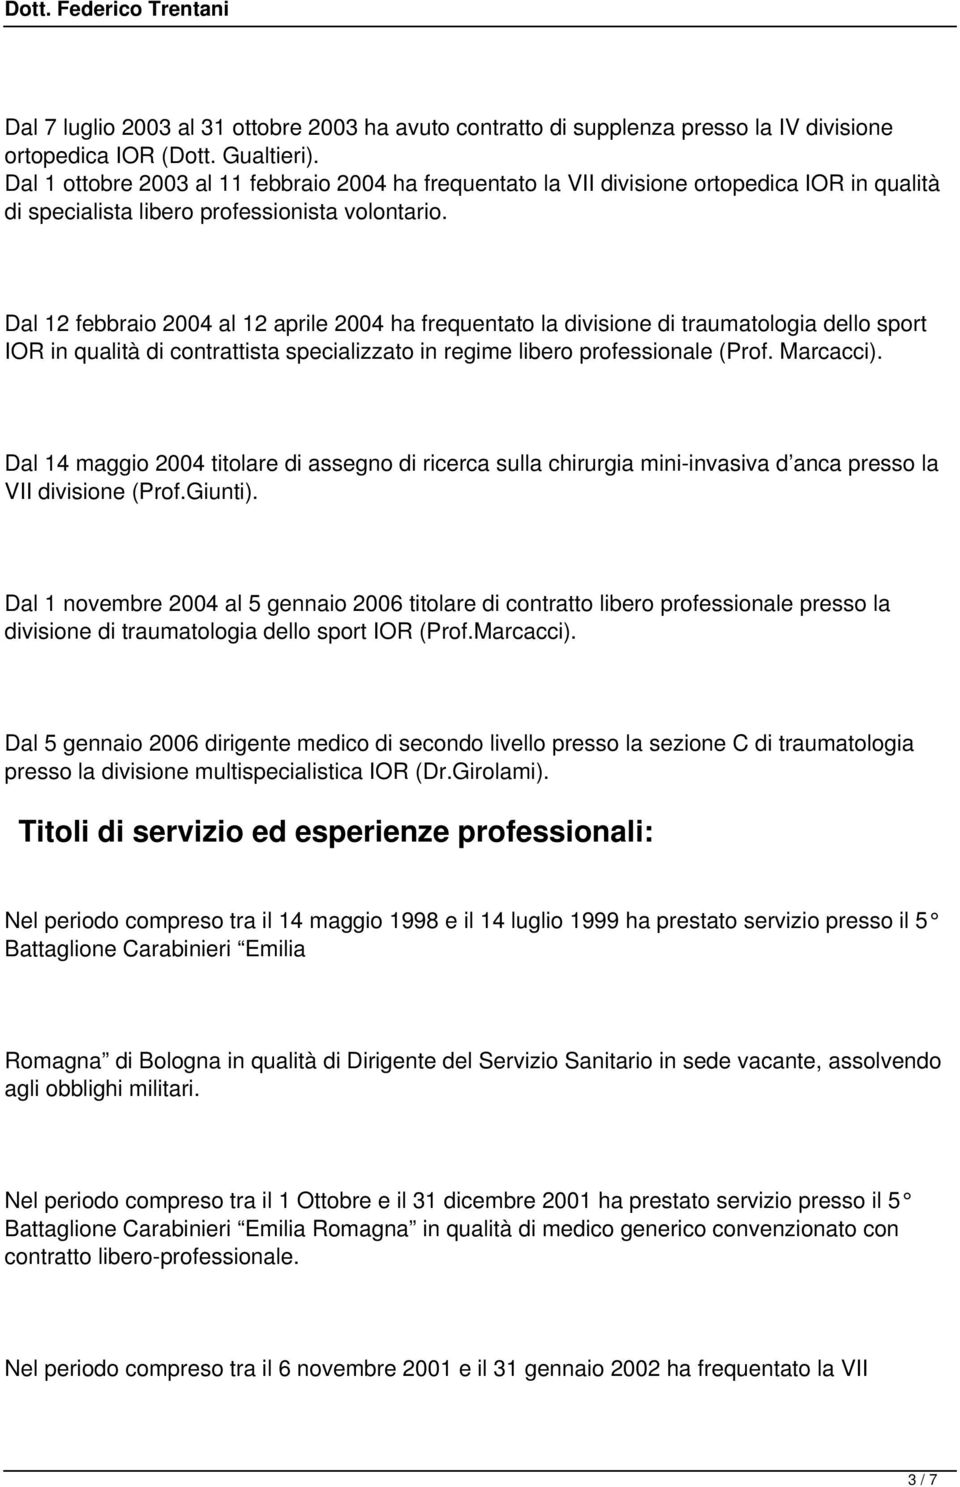 Dal 12 febbraio 2004 al 12 aprile 2004 ha frequentato la divisione di traumatologia dello sport IOR in qualità di contrattista specializzato in regime libero professionale (Prof. Marcacci).